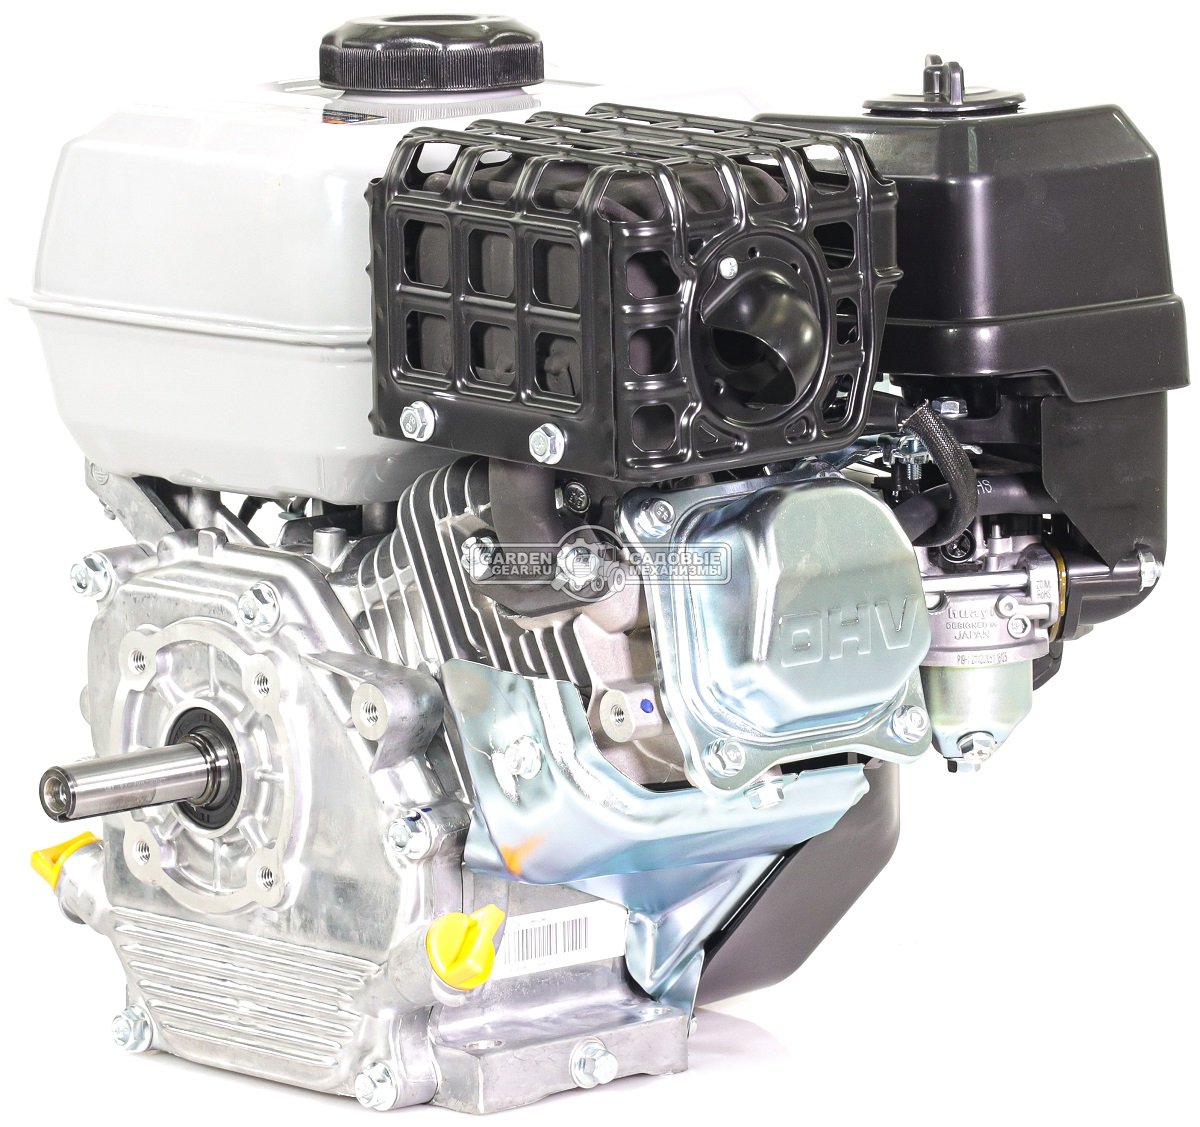 Бензиновый двигатель Zongshen ZS GB 200 (PRC, 6.5 л.с., 196 см3. диам. 19.05 мм шпонка, 16 кг)